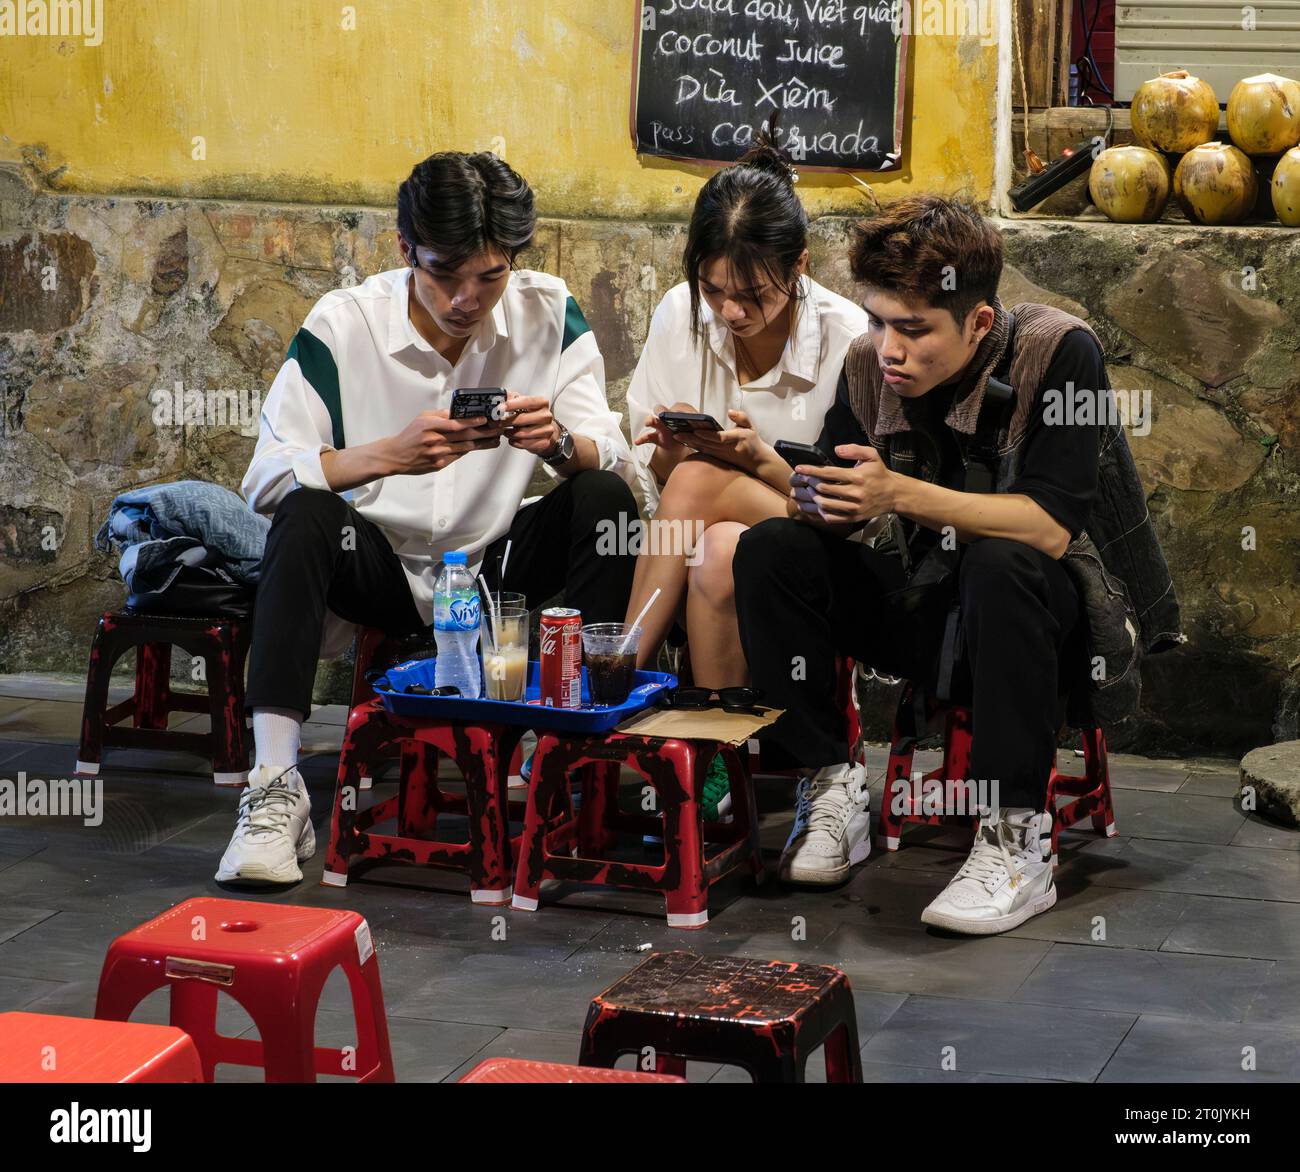 Hoi An, Vietnam. Drei junge Leute, die in ihre Handys vertieft waren, während sie Erfrischungen tranken. Stockfoto